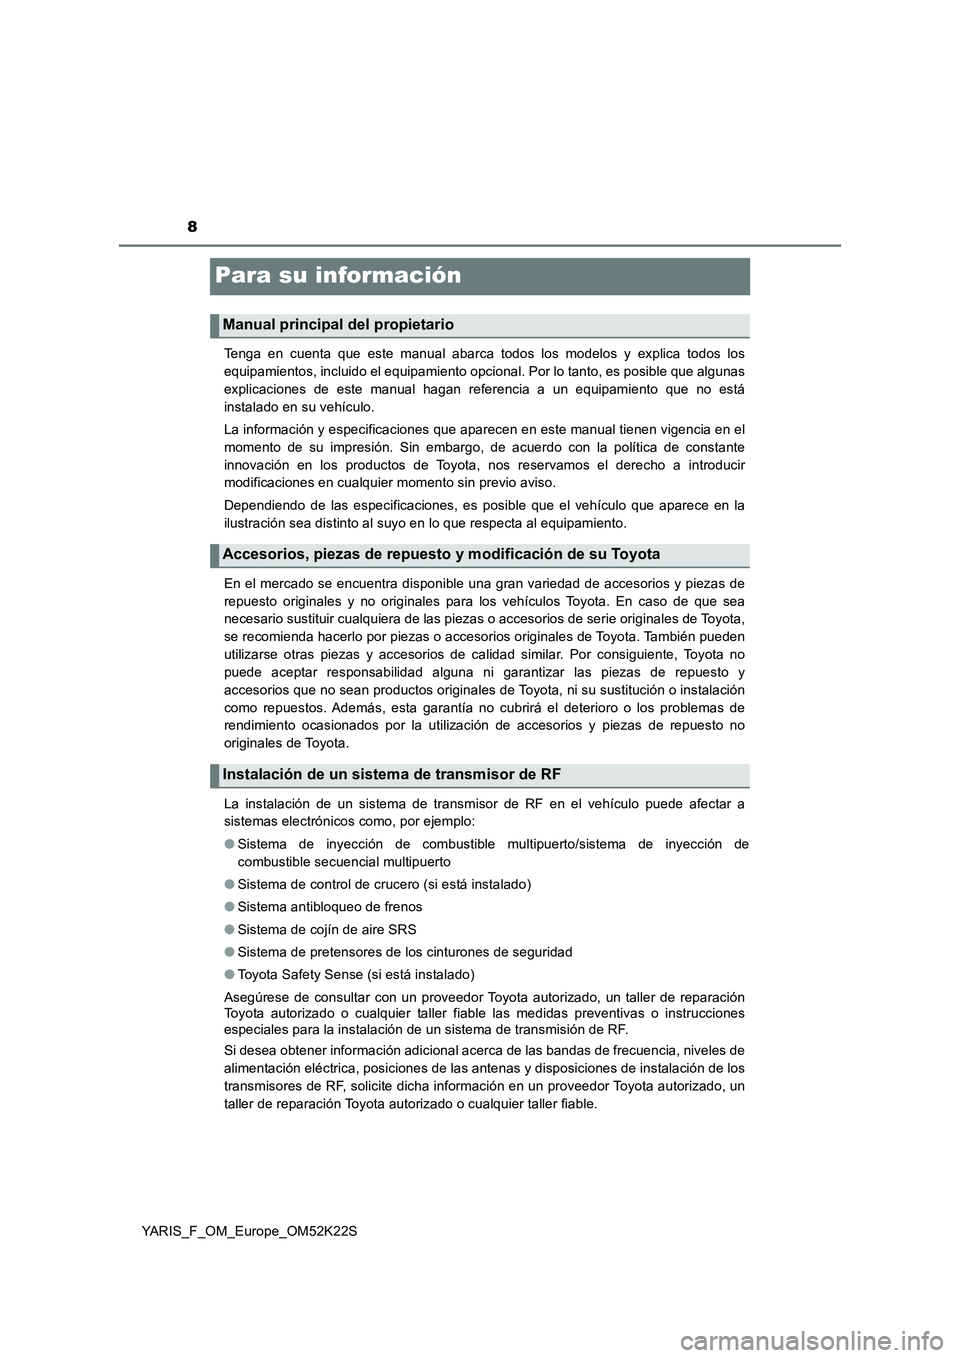 TOYOTA YARIS 2019  Manuale de Empleo (in Spanish) 8
YARIS_F_OM_Europe_OM52K22S
Para su información
Tenga en cuenta que este manual abarca todos los modelos y explica todos los
equipamientos, incluido el equipamiento opcional. Por lo tanto, es posibl